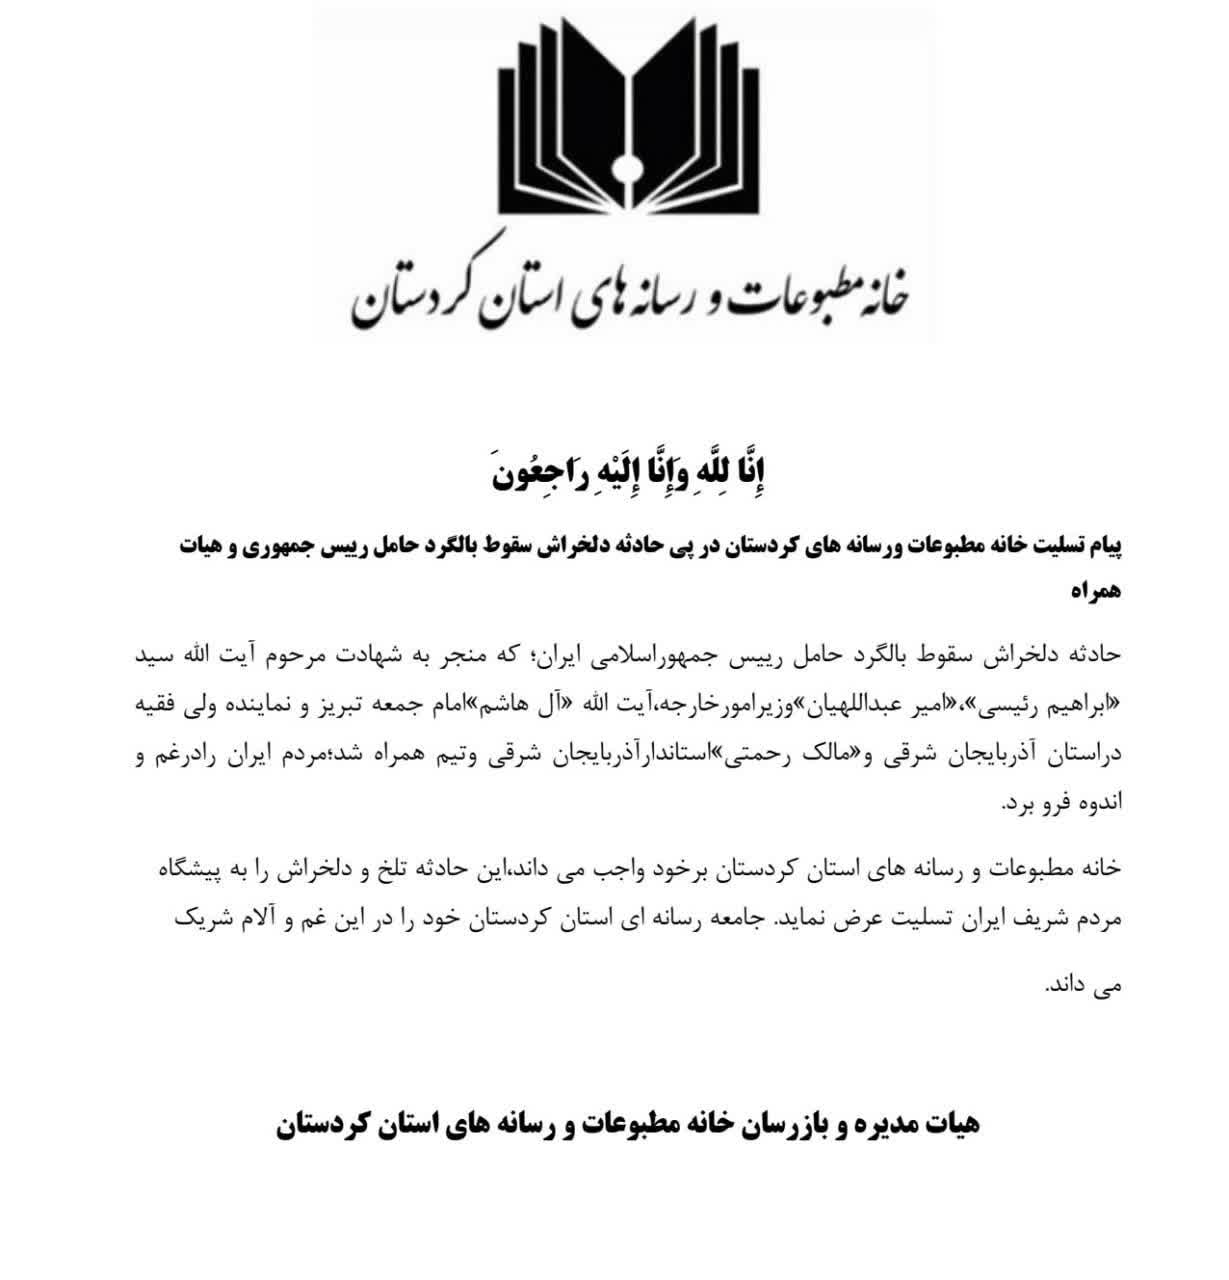 بیانیه خانه مطبوعات و رسانه های استان کردستان: